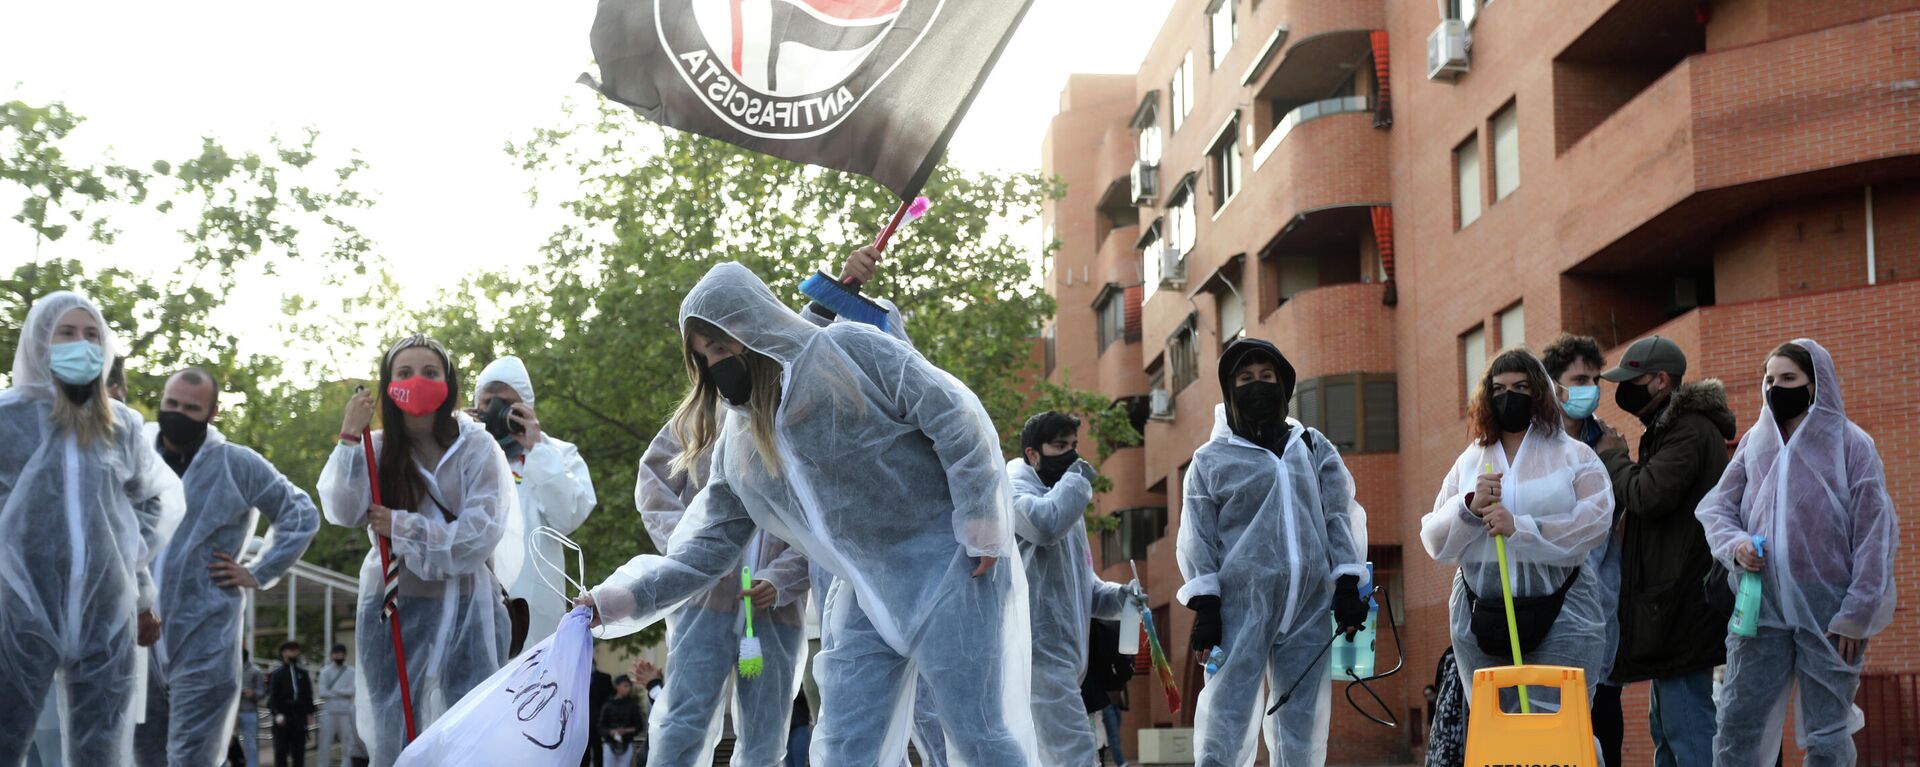 Varias personas durante el acto 'Desinfecta Vallekas del Fascismo'. Madrid, 8 de abril de 2021 - Sputnik Mundo, 1920, 09.04.2021